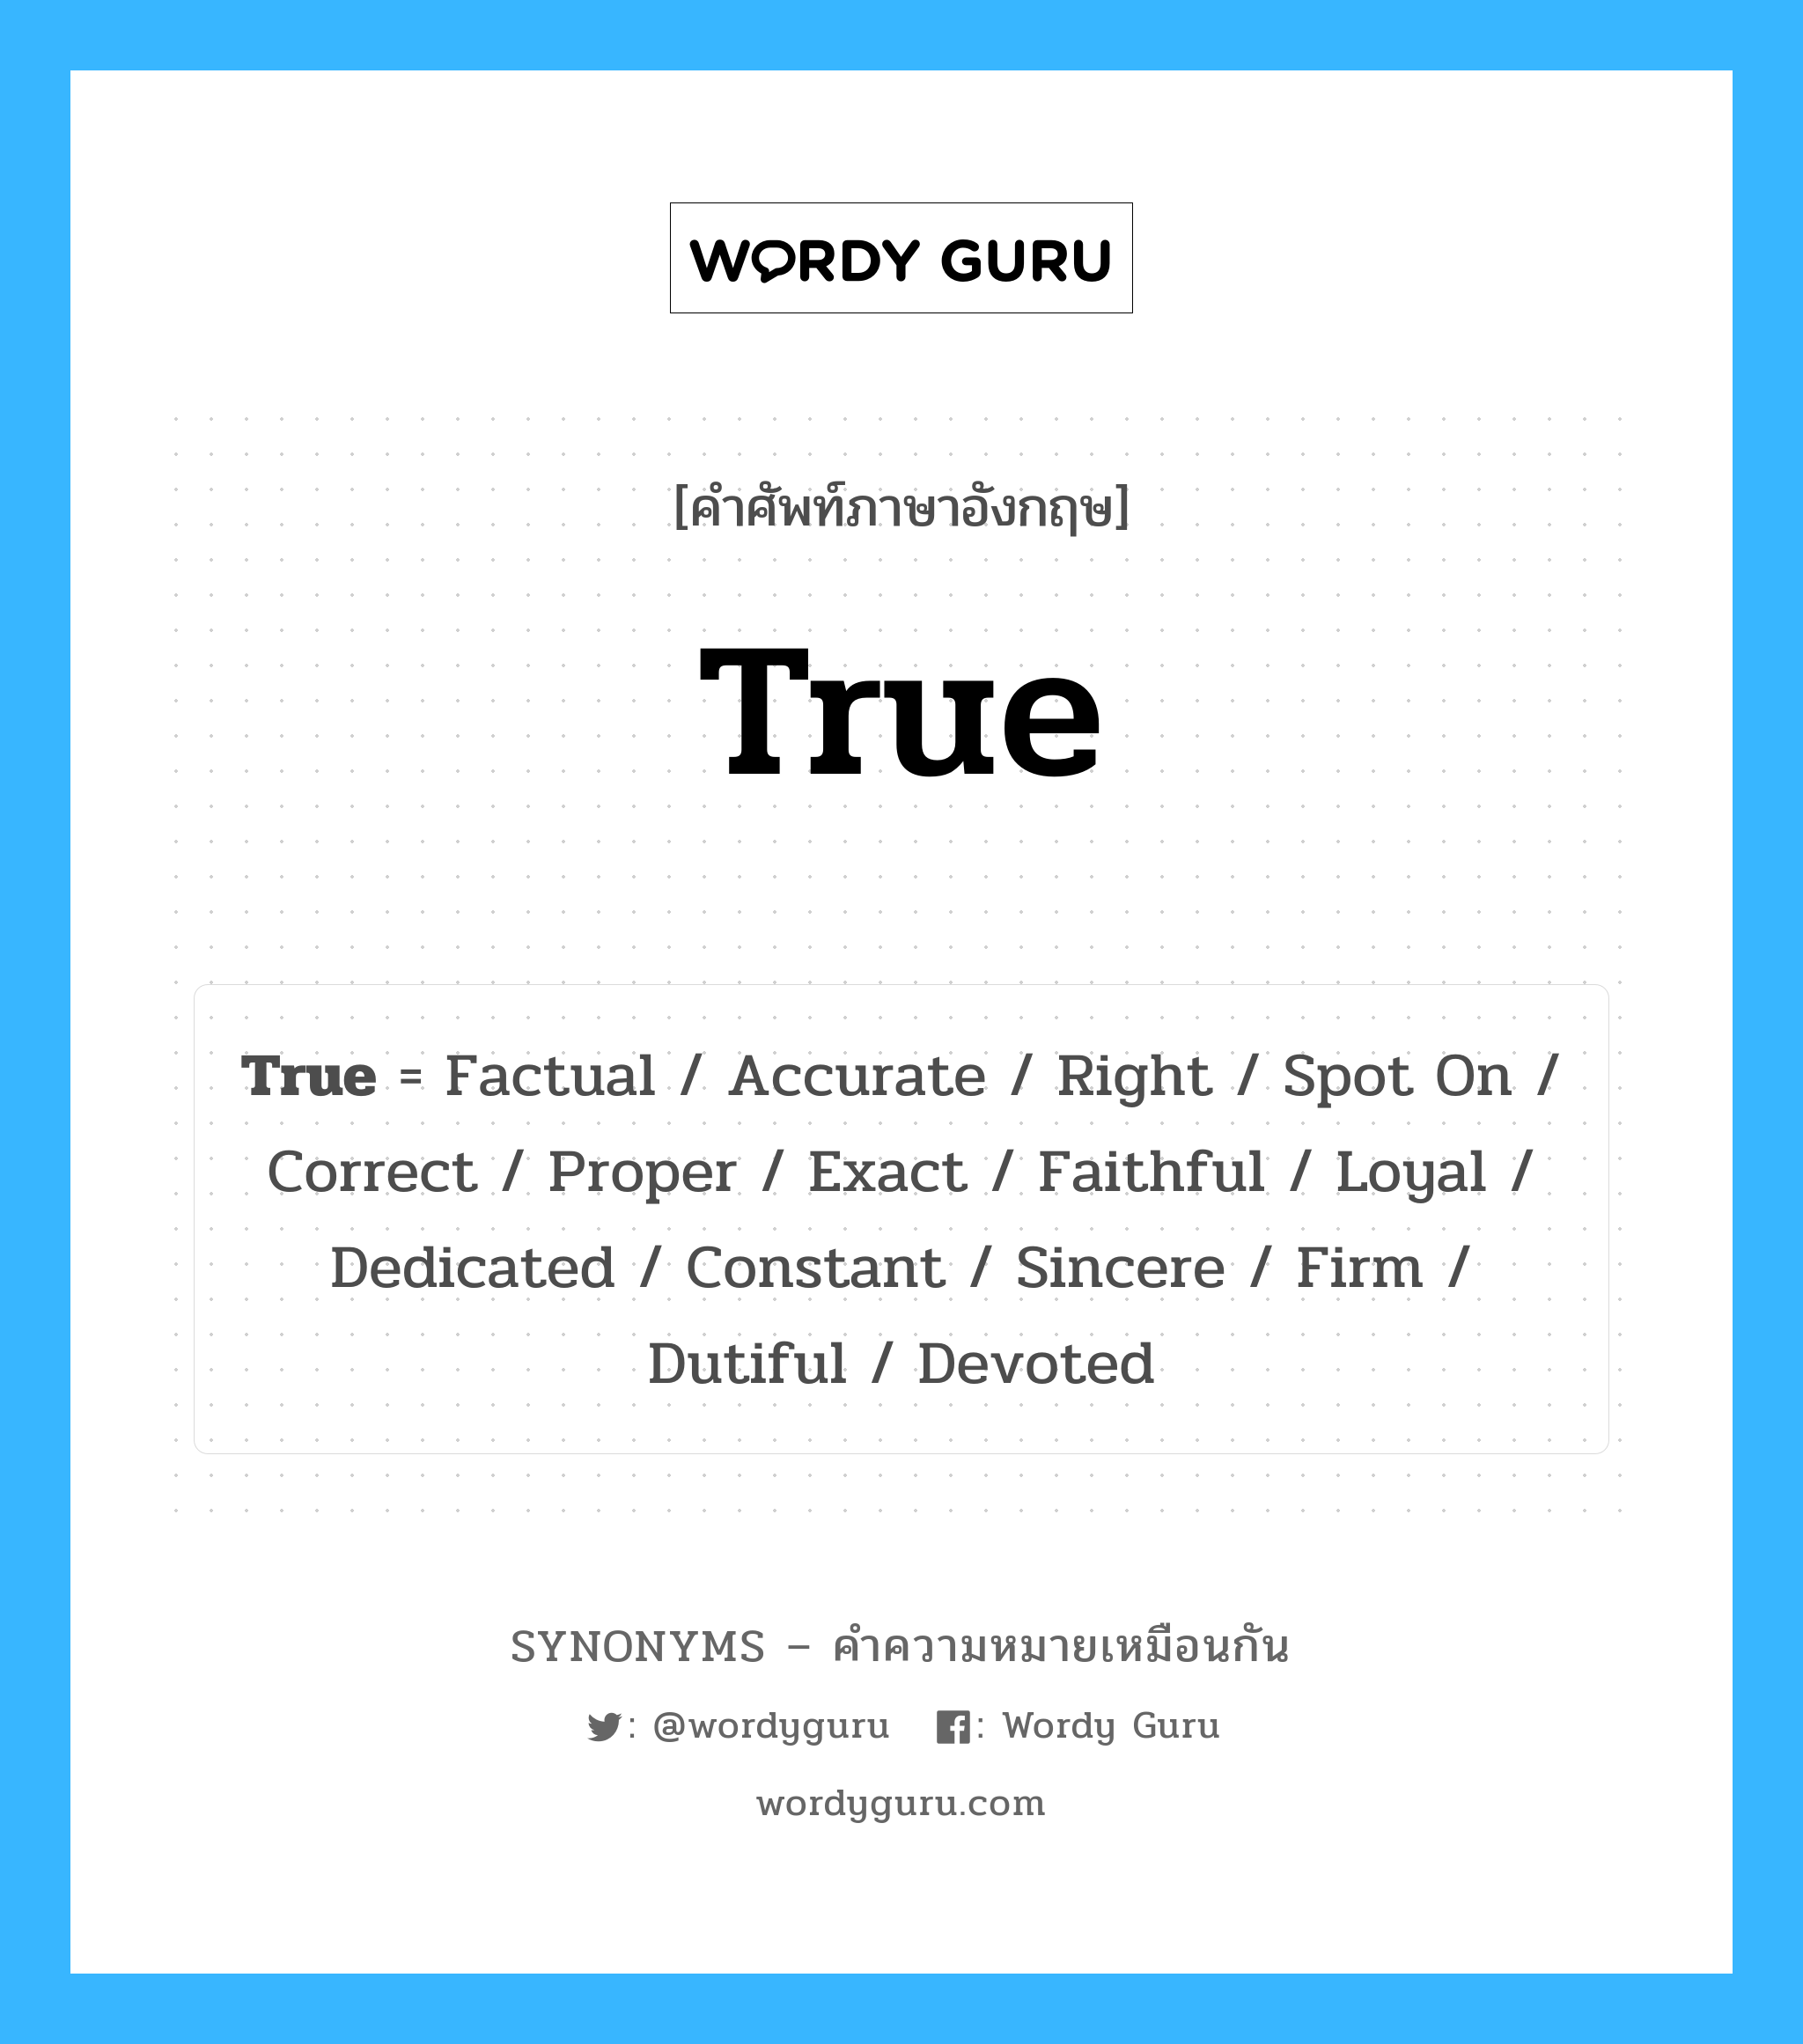 True เป็นหนึ่งใน Accurate และมีคำอื่น ๆ อีกดังนี้, คำศัพท์ภาษาอังกฤษ True ความหมายคล้ายกันกับ Accurate แปลว่า ความถูกต้อง หมวด Accurate